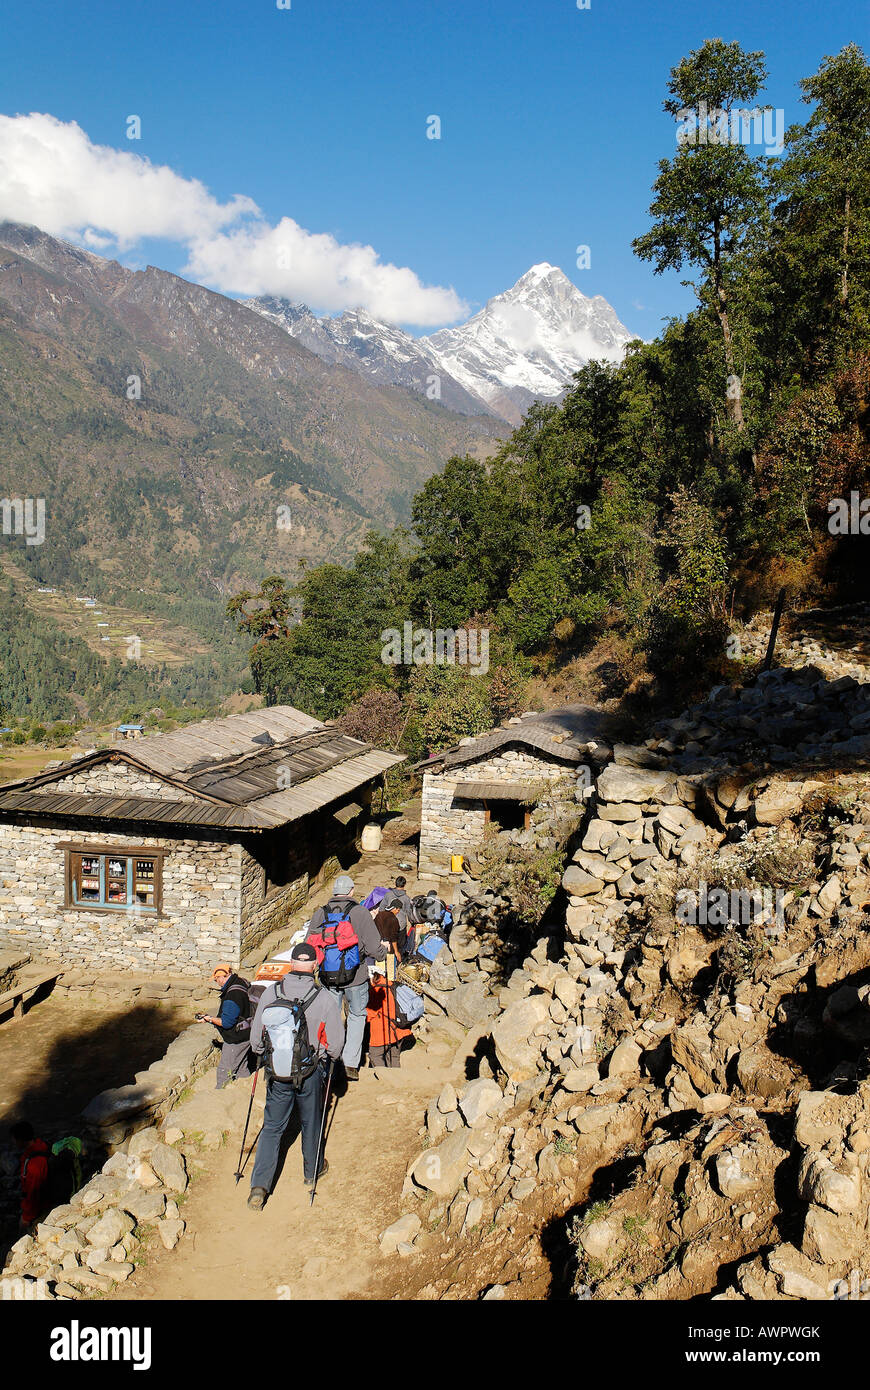 Dudh Koshi valley, Solukhumbu, Khumbu, Mount Everest region, Nepal Stock Photo